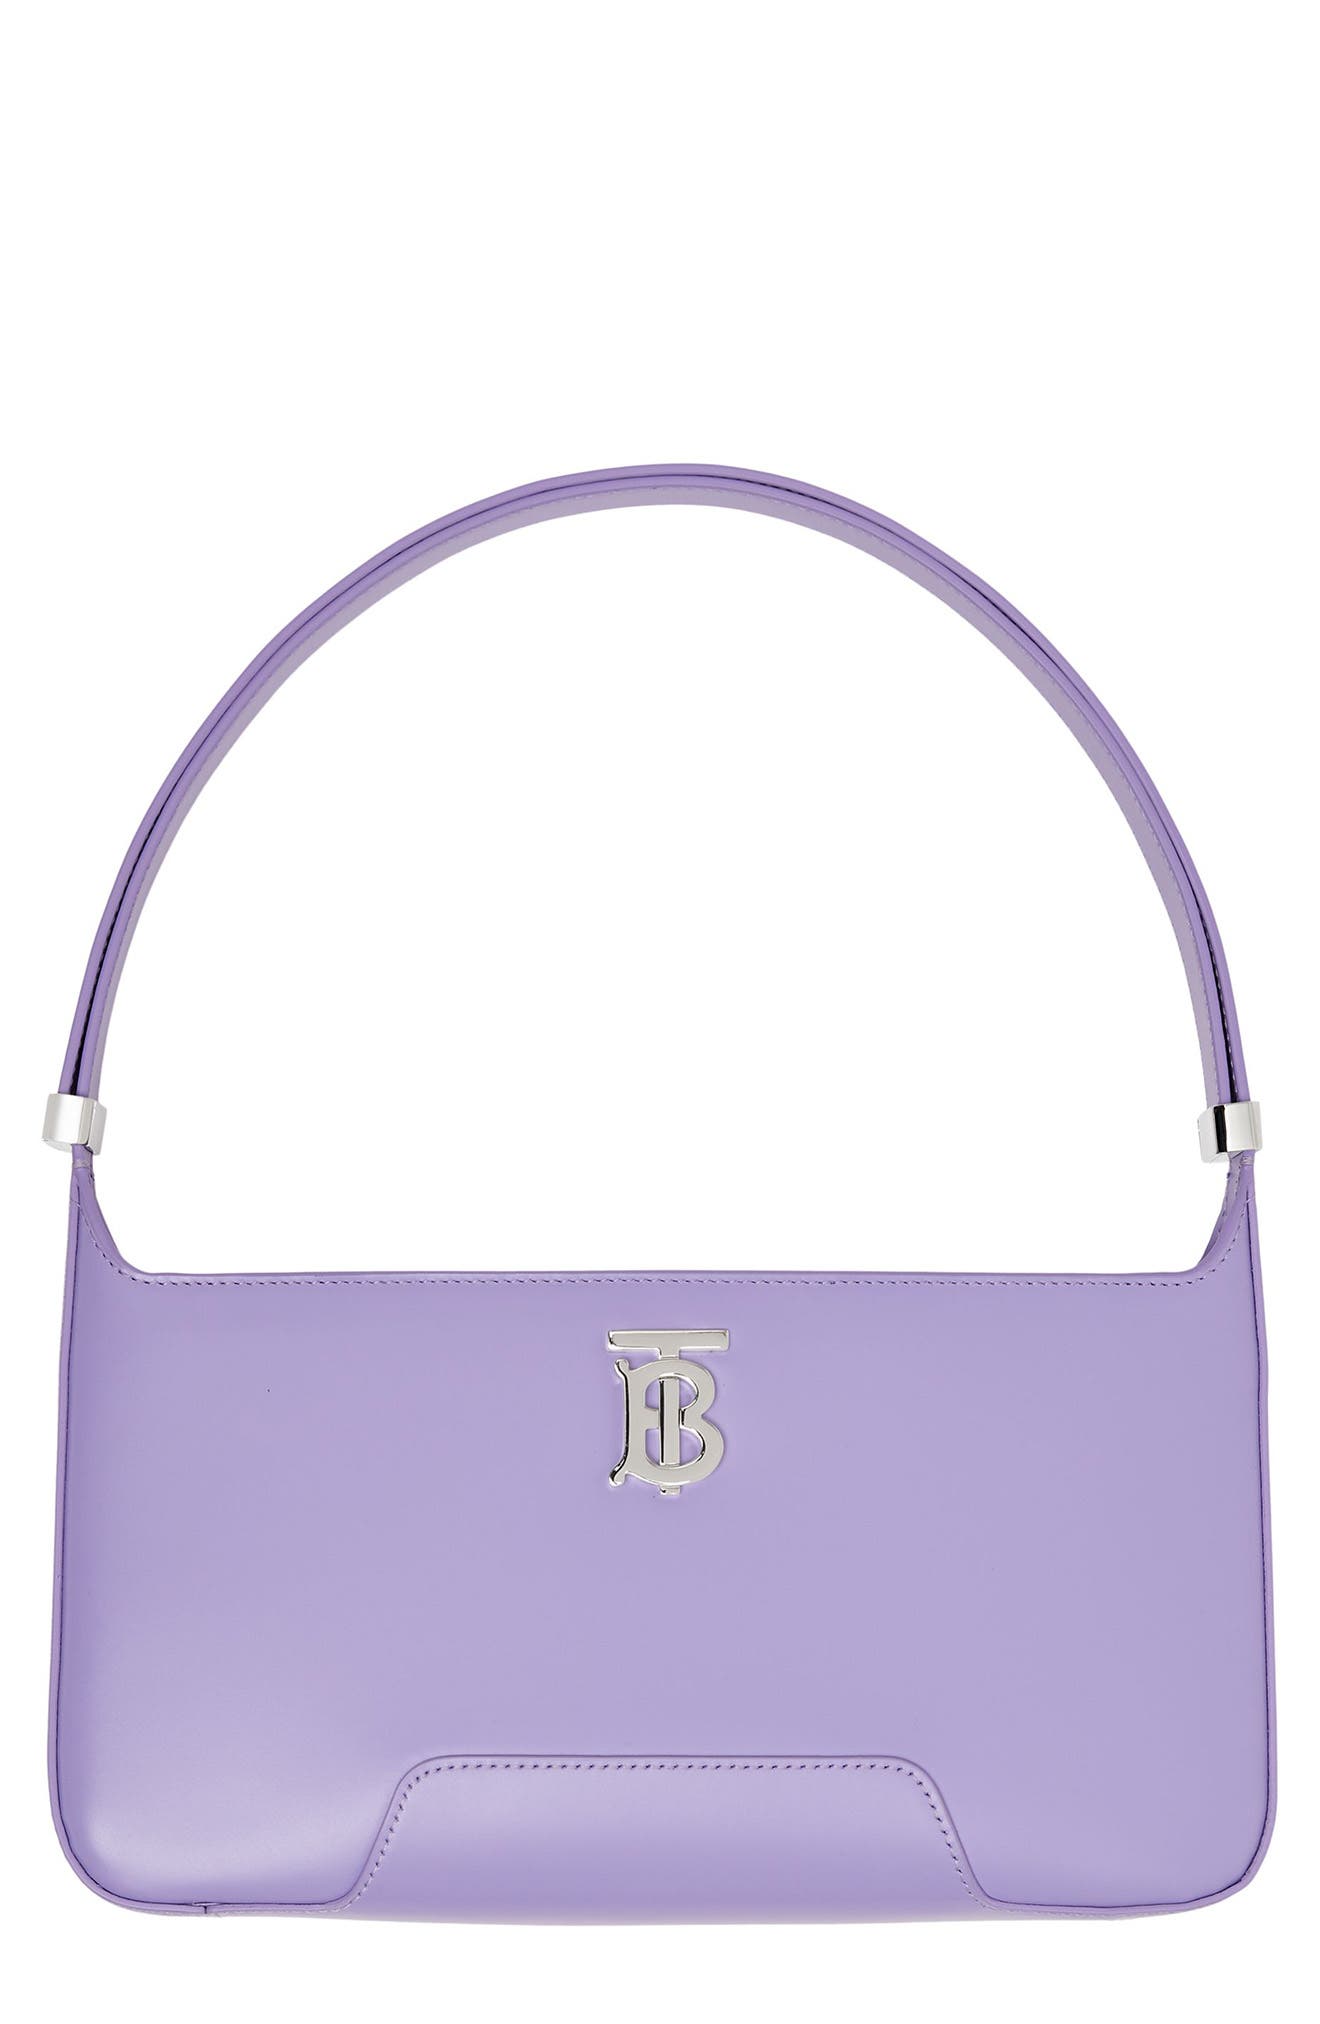 Burberry Medium TB Monogram Leather Shoulder Bag in Soft Violet